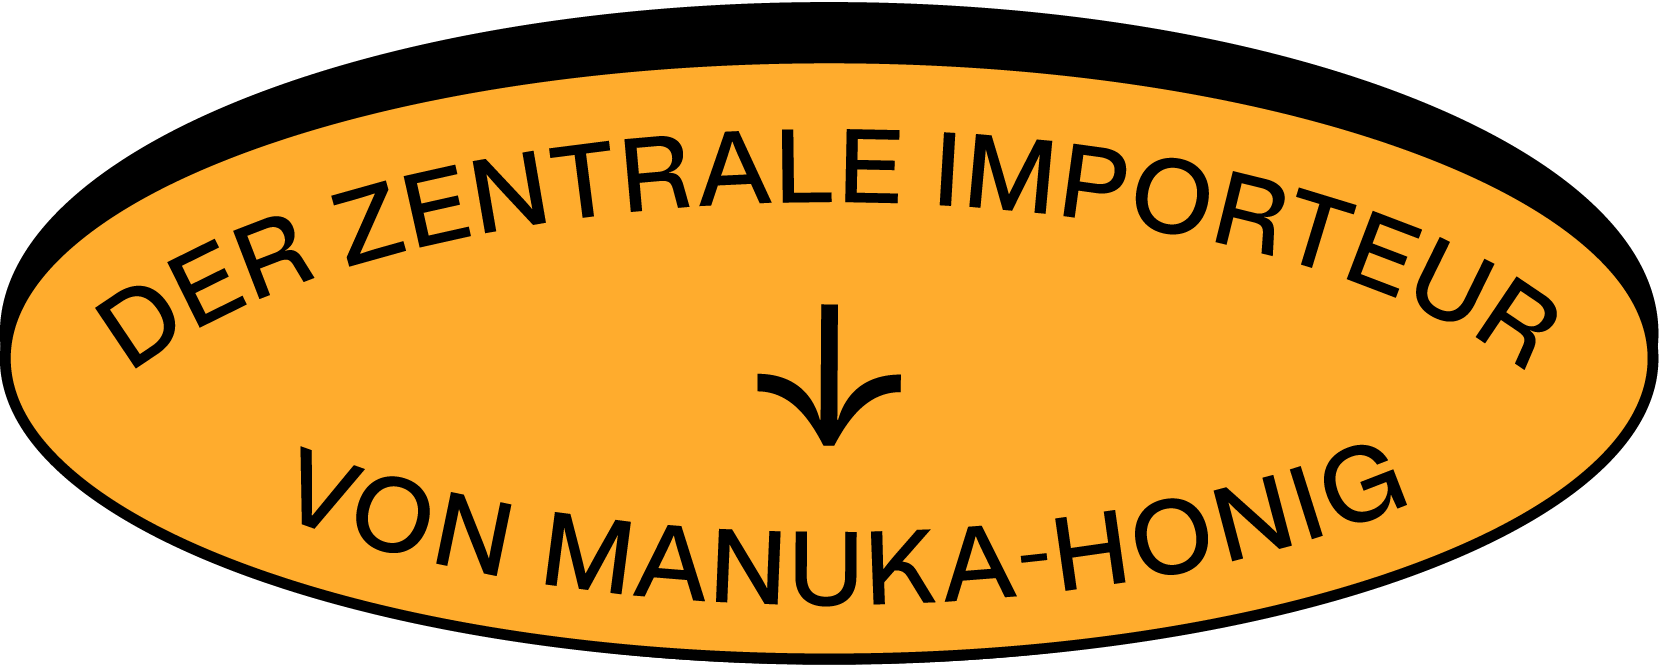 Der zentrale Importeur von Manuka-Honig